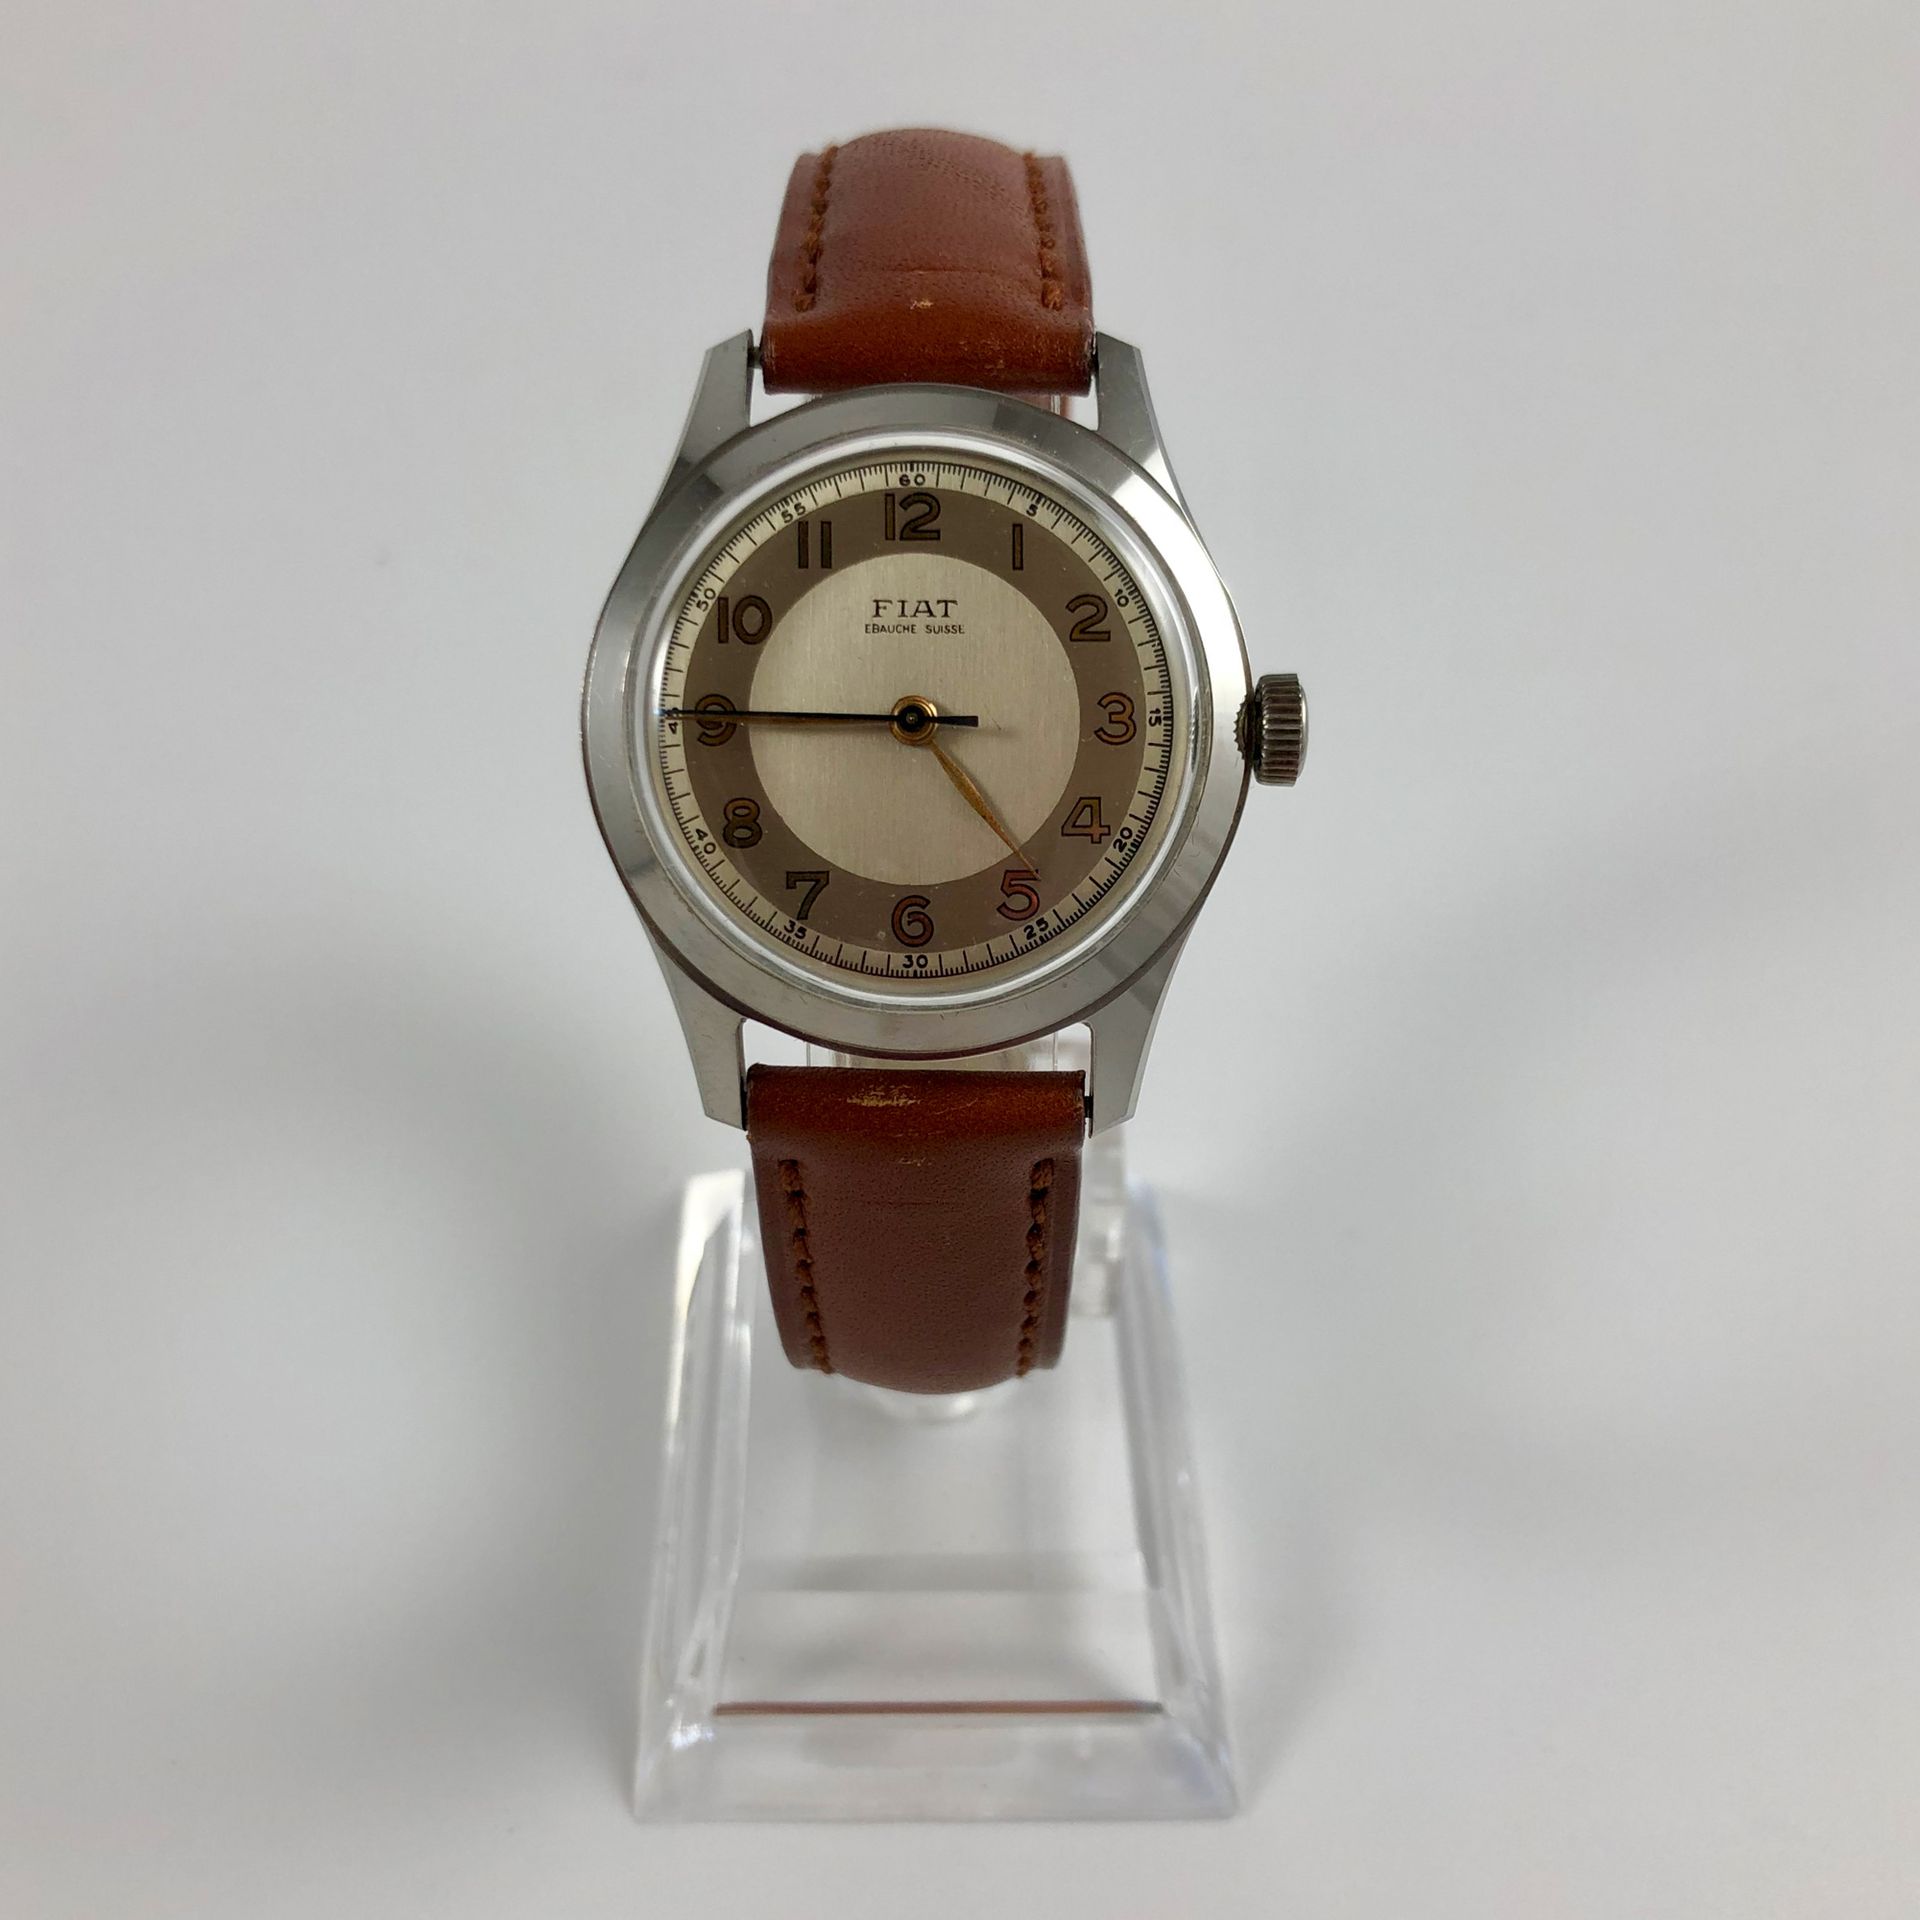 Null 
FIAT

Um 1950

Uhr signiert fiat ébauche

Stahlgehäuse, cremefarbenes Ziff&hellip;